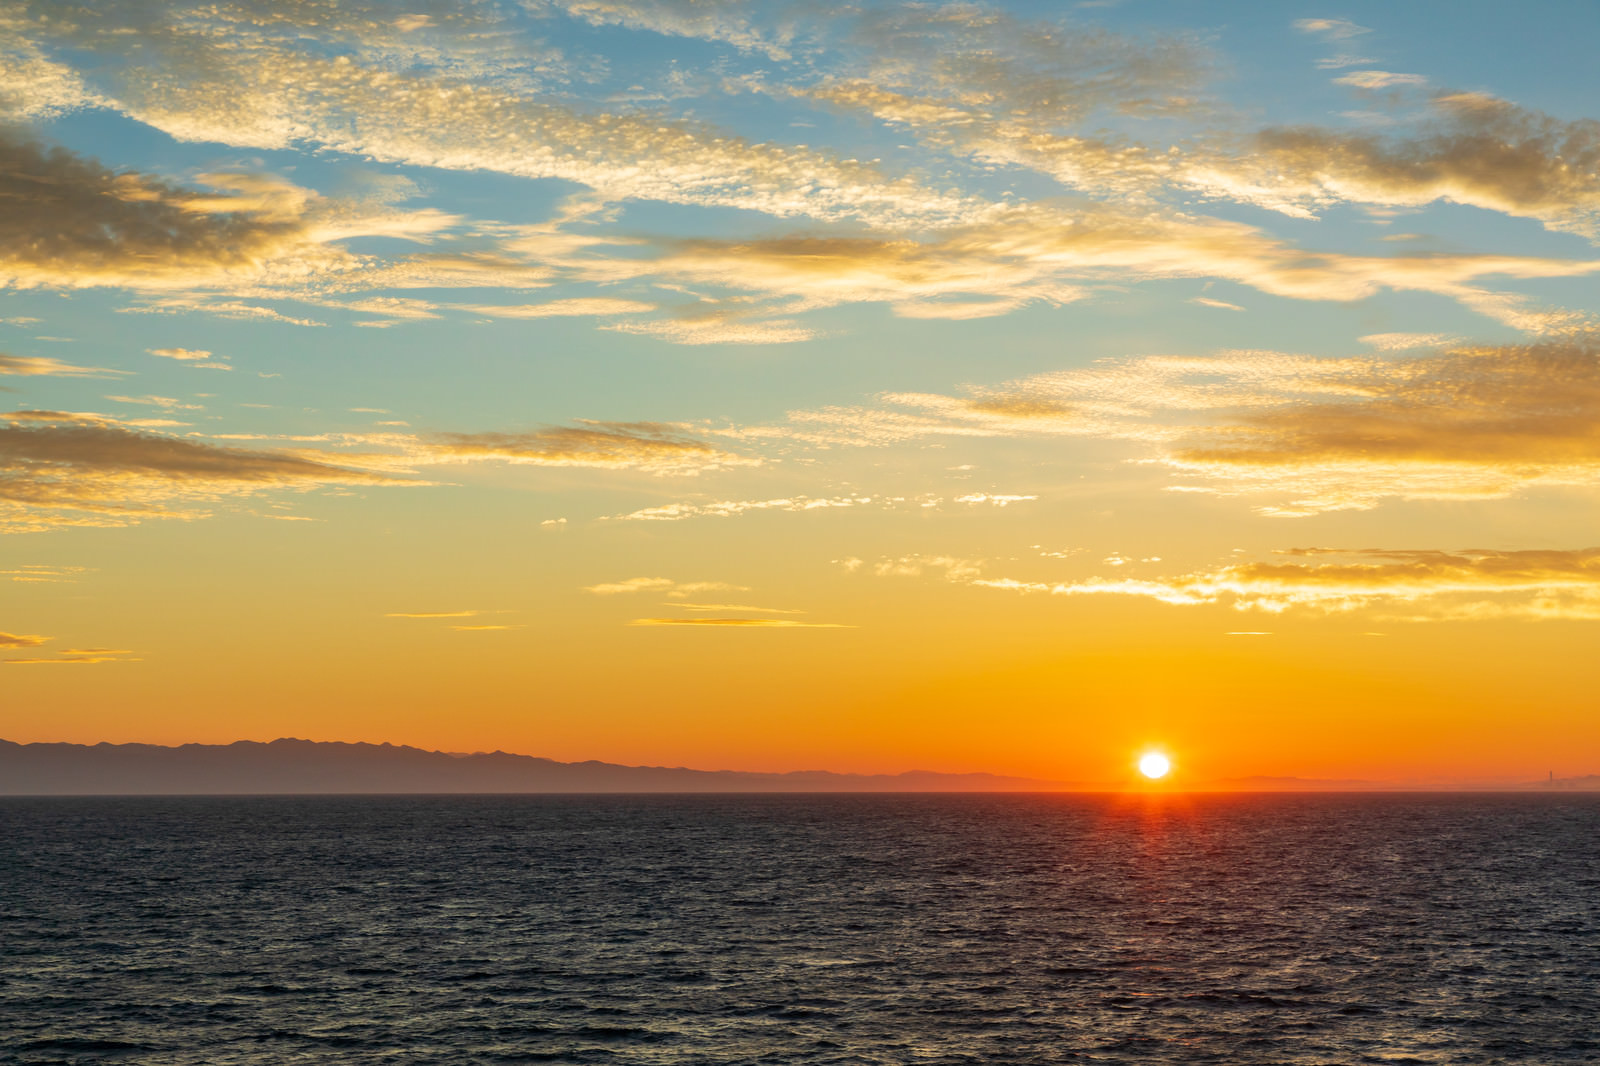 日本海の夜明けと日の出の写真 画像 フリー素材 ぱくたそ